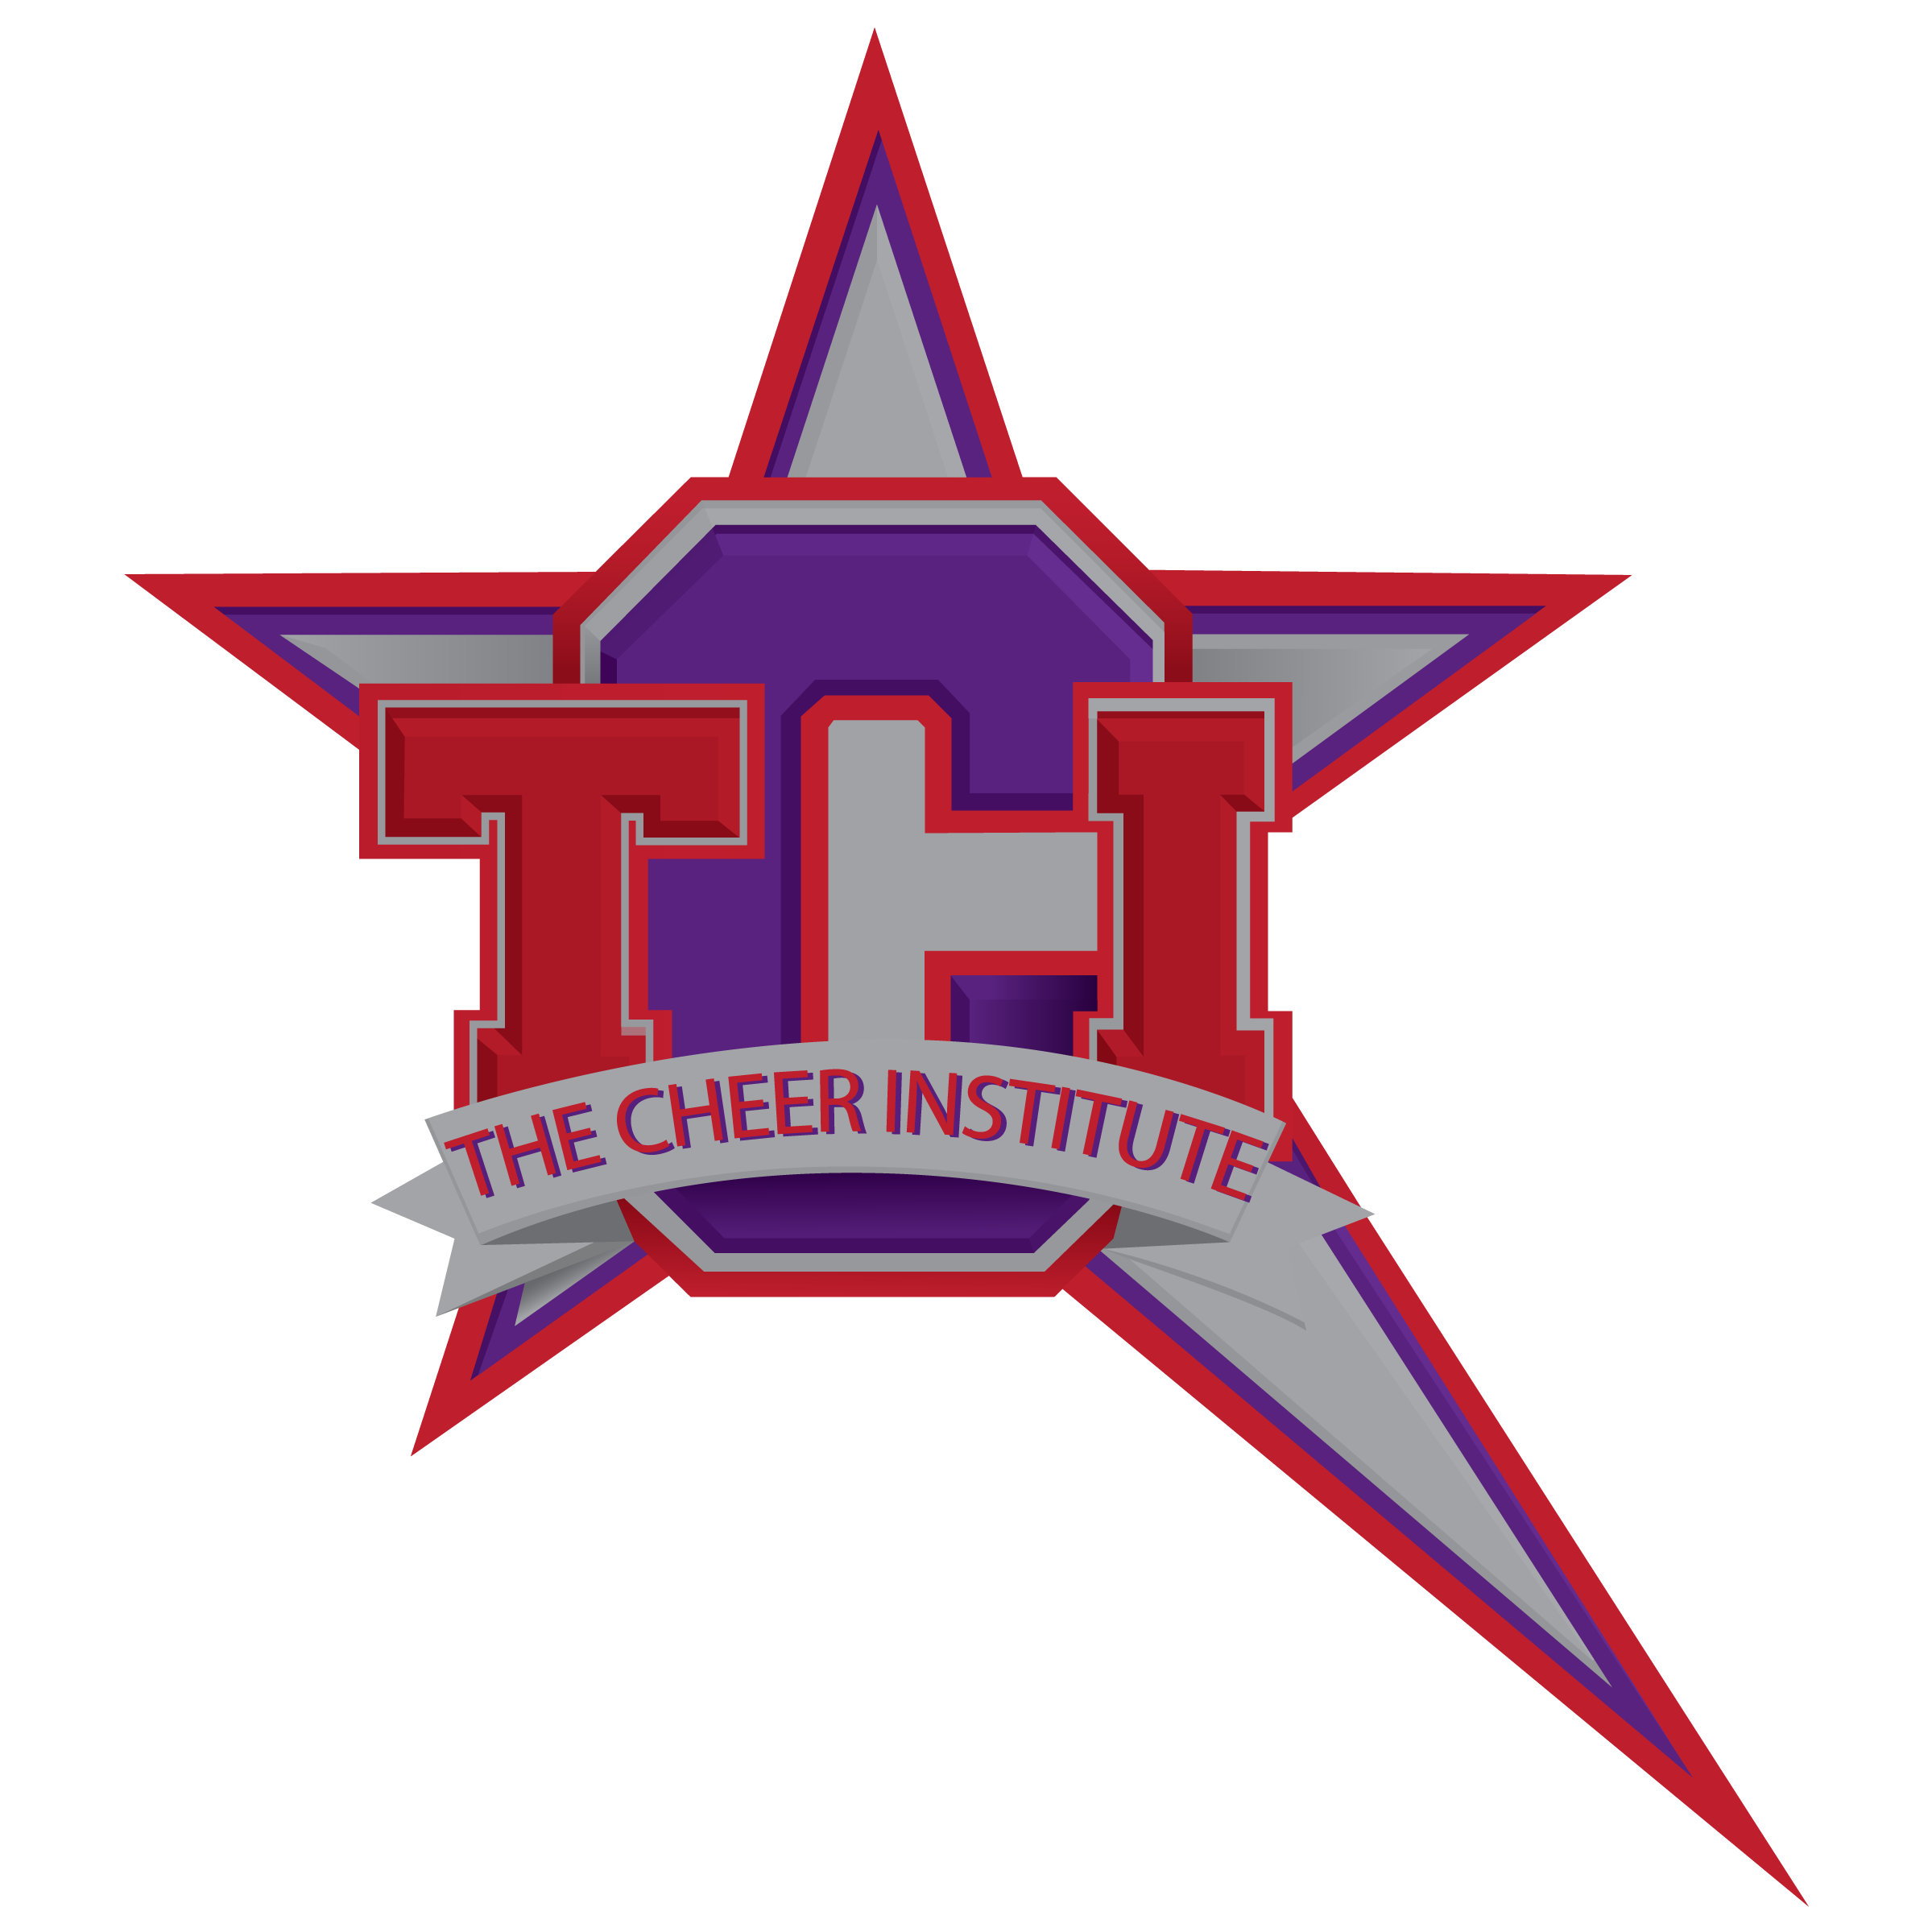 The Cheer Institute logo